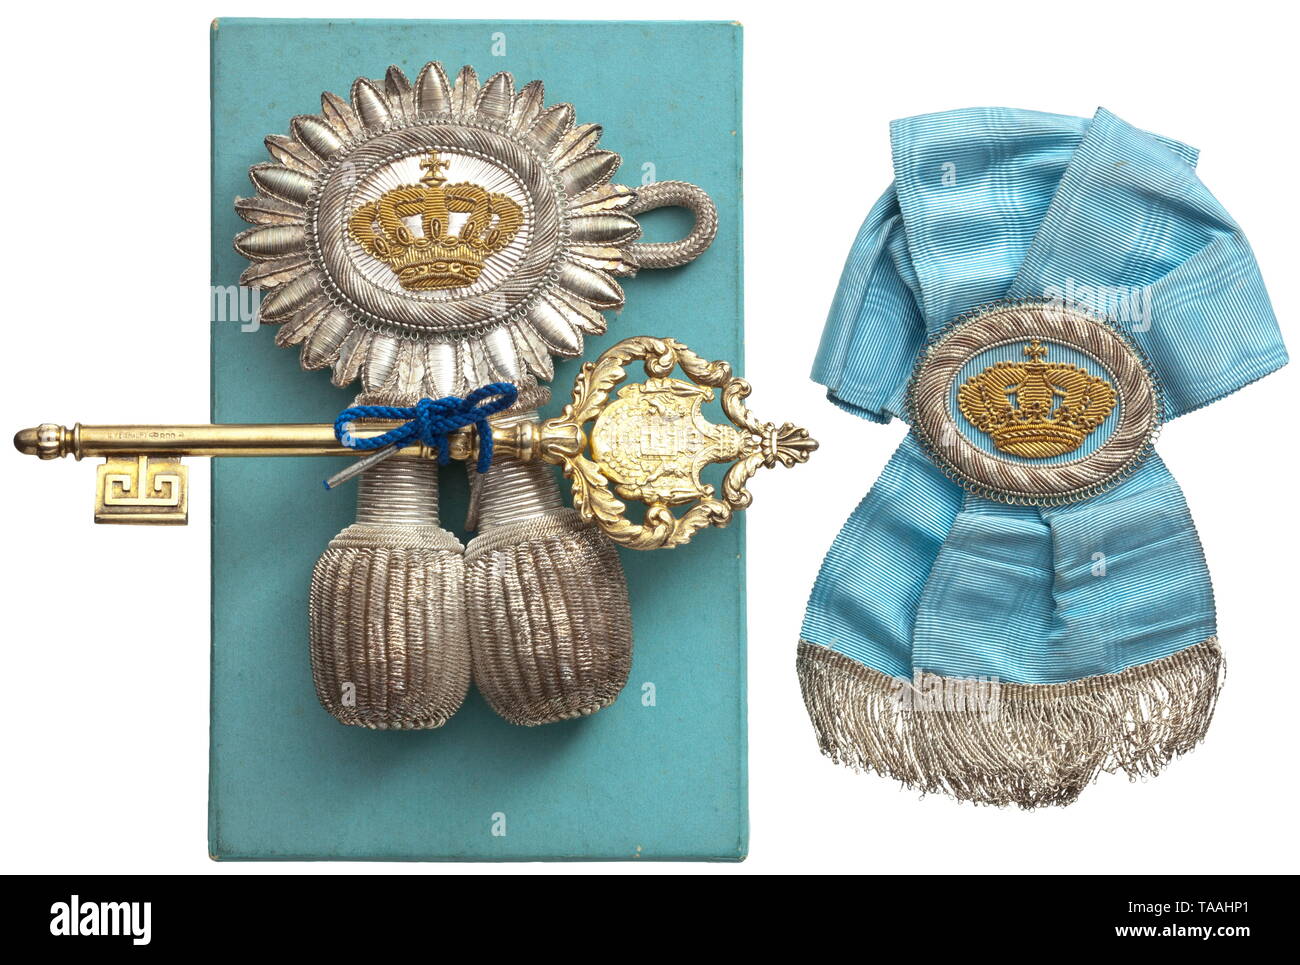 Un incassato il ciambellano ha la chiave sotto il Principe Reggente Luitpold (1886 - 1912) chiave realizzata in argento dorato ('800', crescent e corona) dall'officina del "C. WEISHAUPT' manufactory a Monaco di Baviera. Con il portepee ricamato in oro e argento filo, in originale, azzurro award presentazione caso. Inoltre il portepee per un scudiero conformato ad arco, legati dalla luce blu seta moirè con la corona del ricamo. Lunghezza 167 mm. Bella ensemble. storica, storica medaglia, decorazione, medaglie, decorazioni, badge di onore, badge di onore, badge di hon, Additional-Rights-Clearance-Info-Not-Available Foto Stock